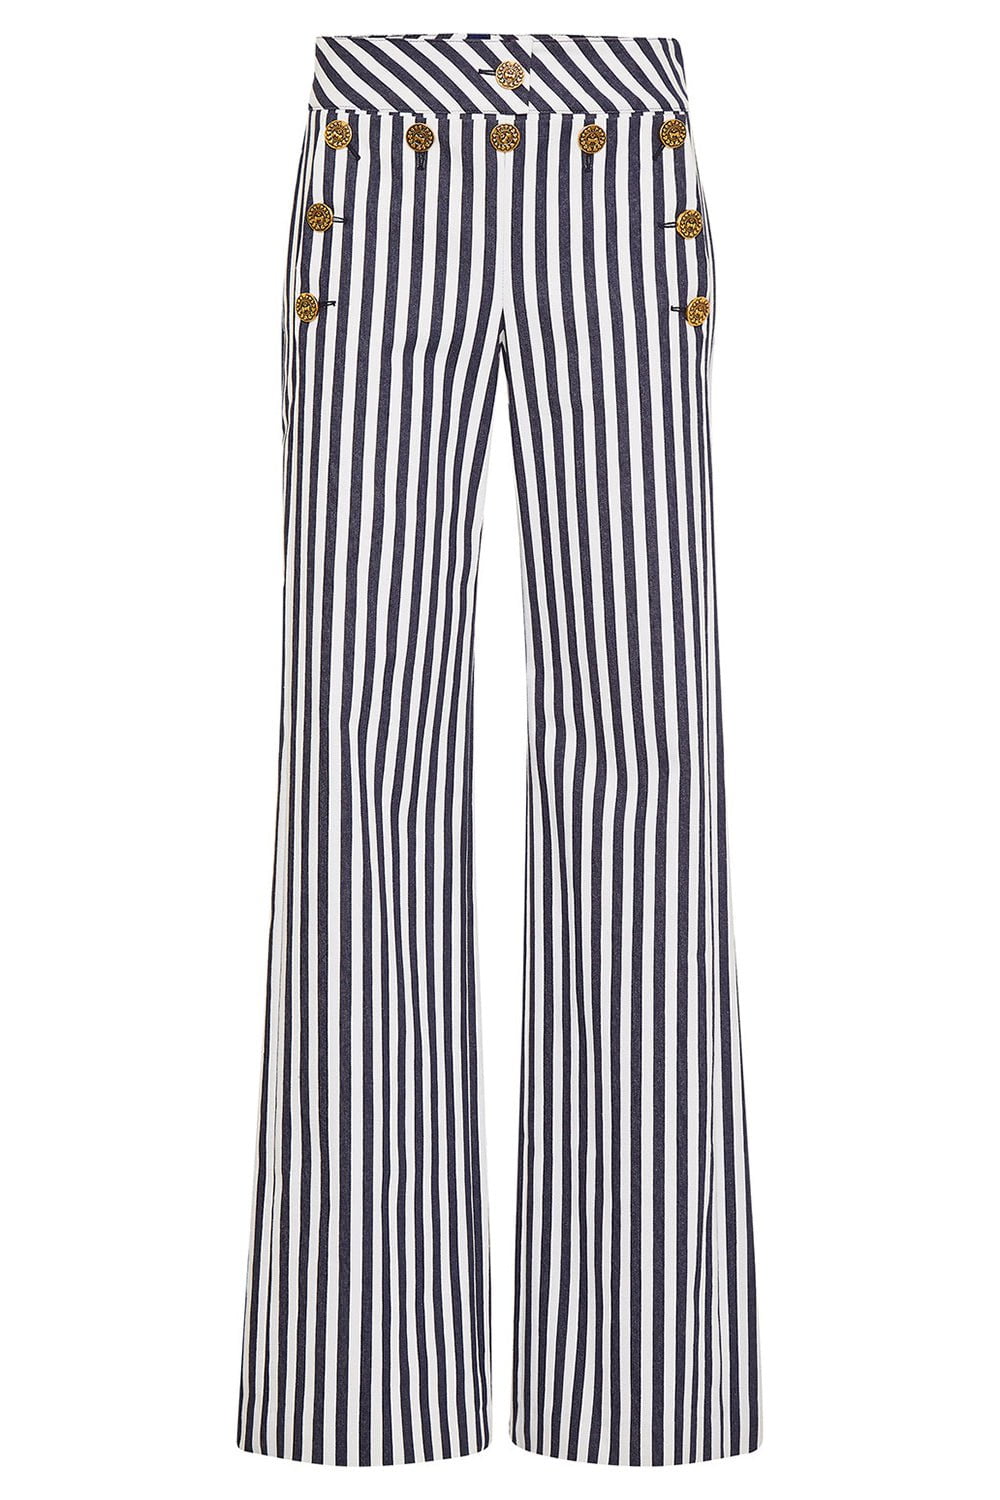 MAISON COMMON-Striped Sailor Pant-